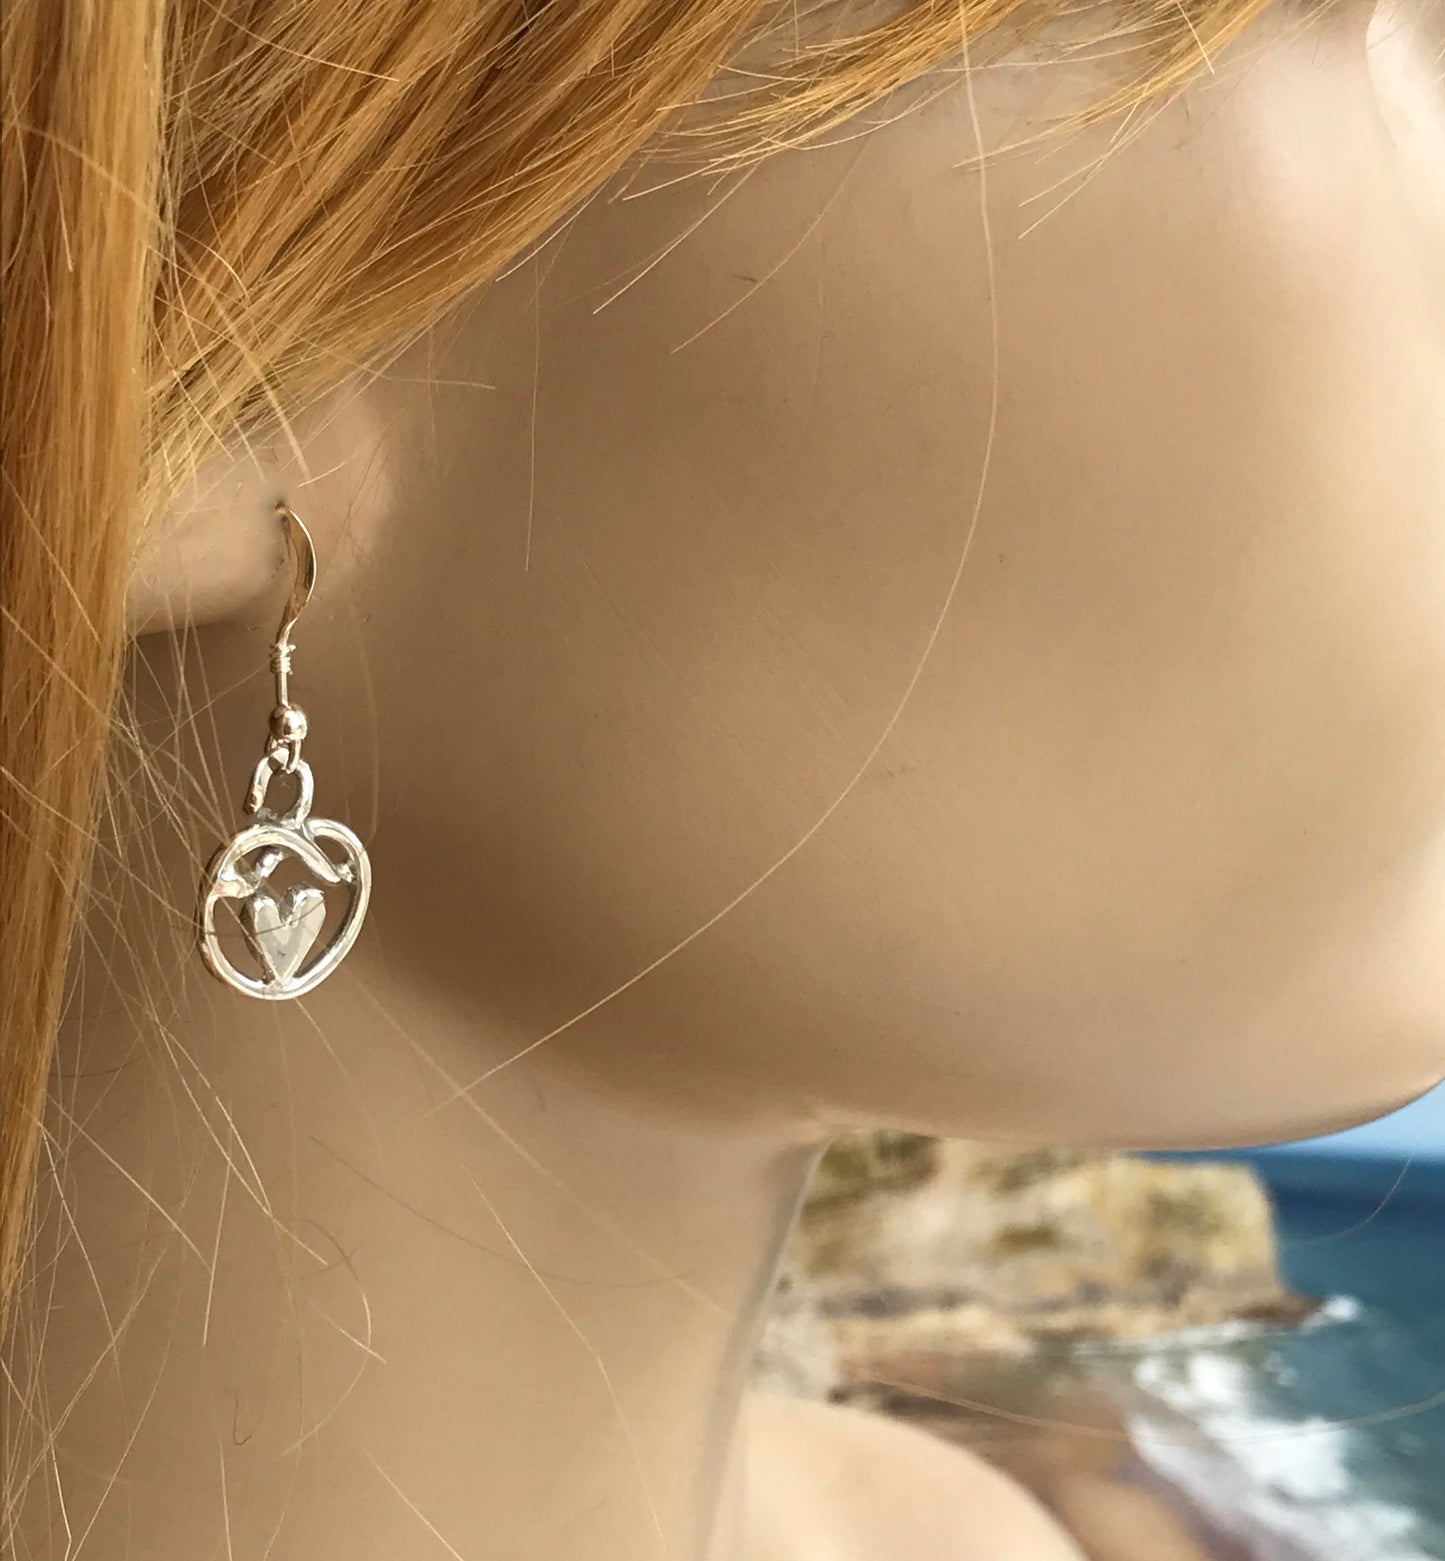 Heart knot of friendship earrings